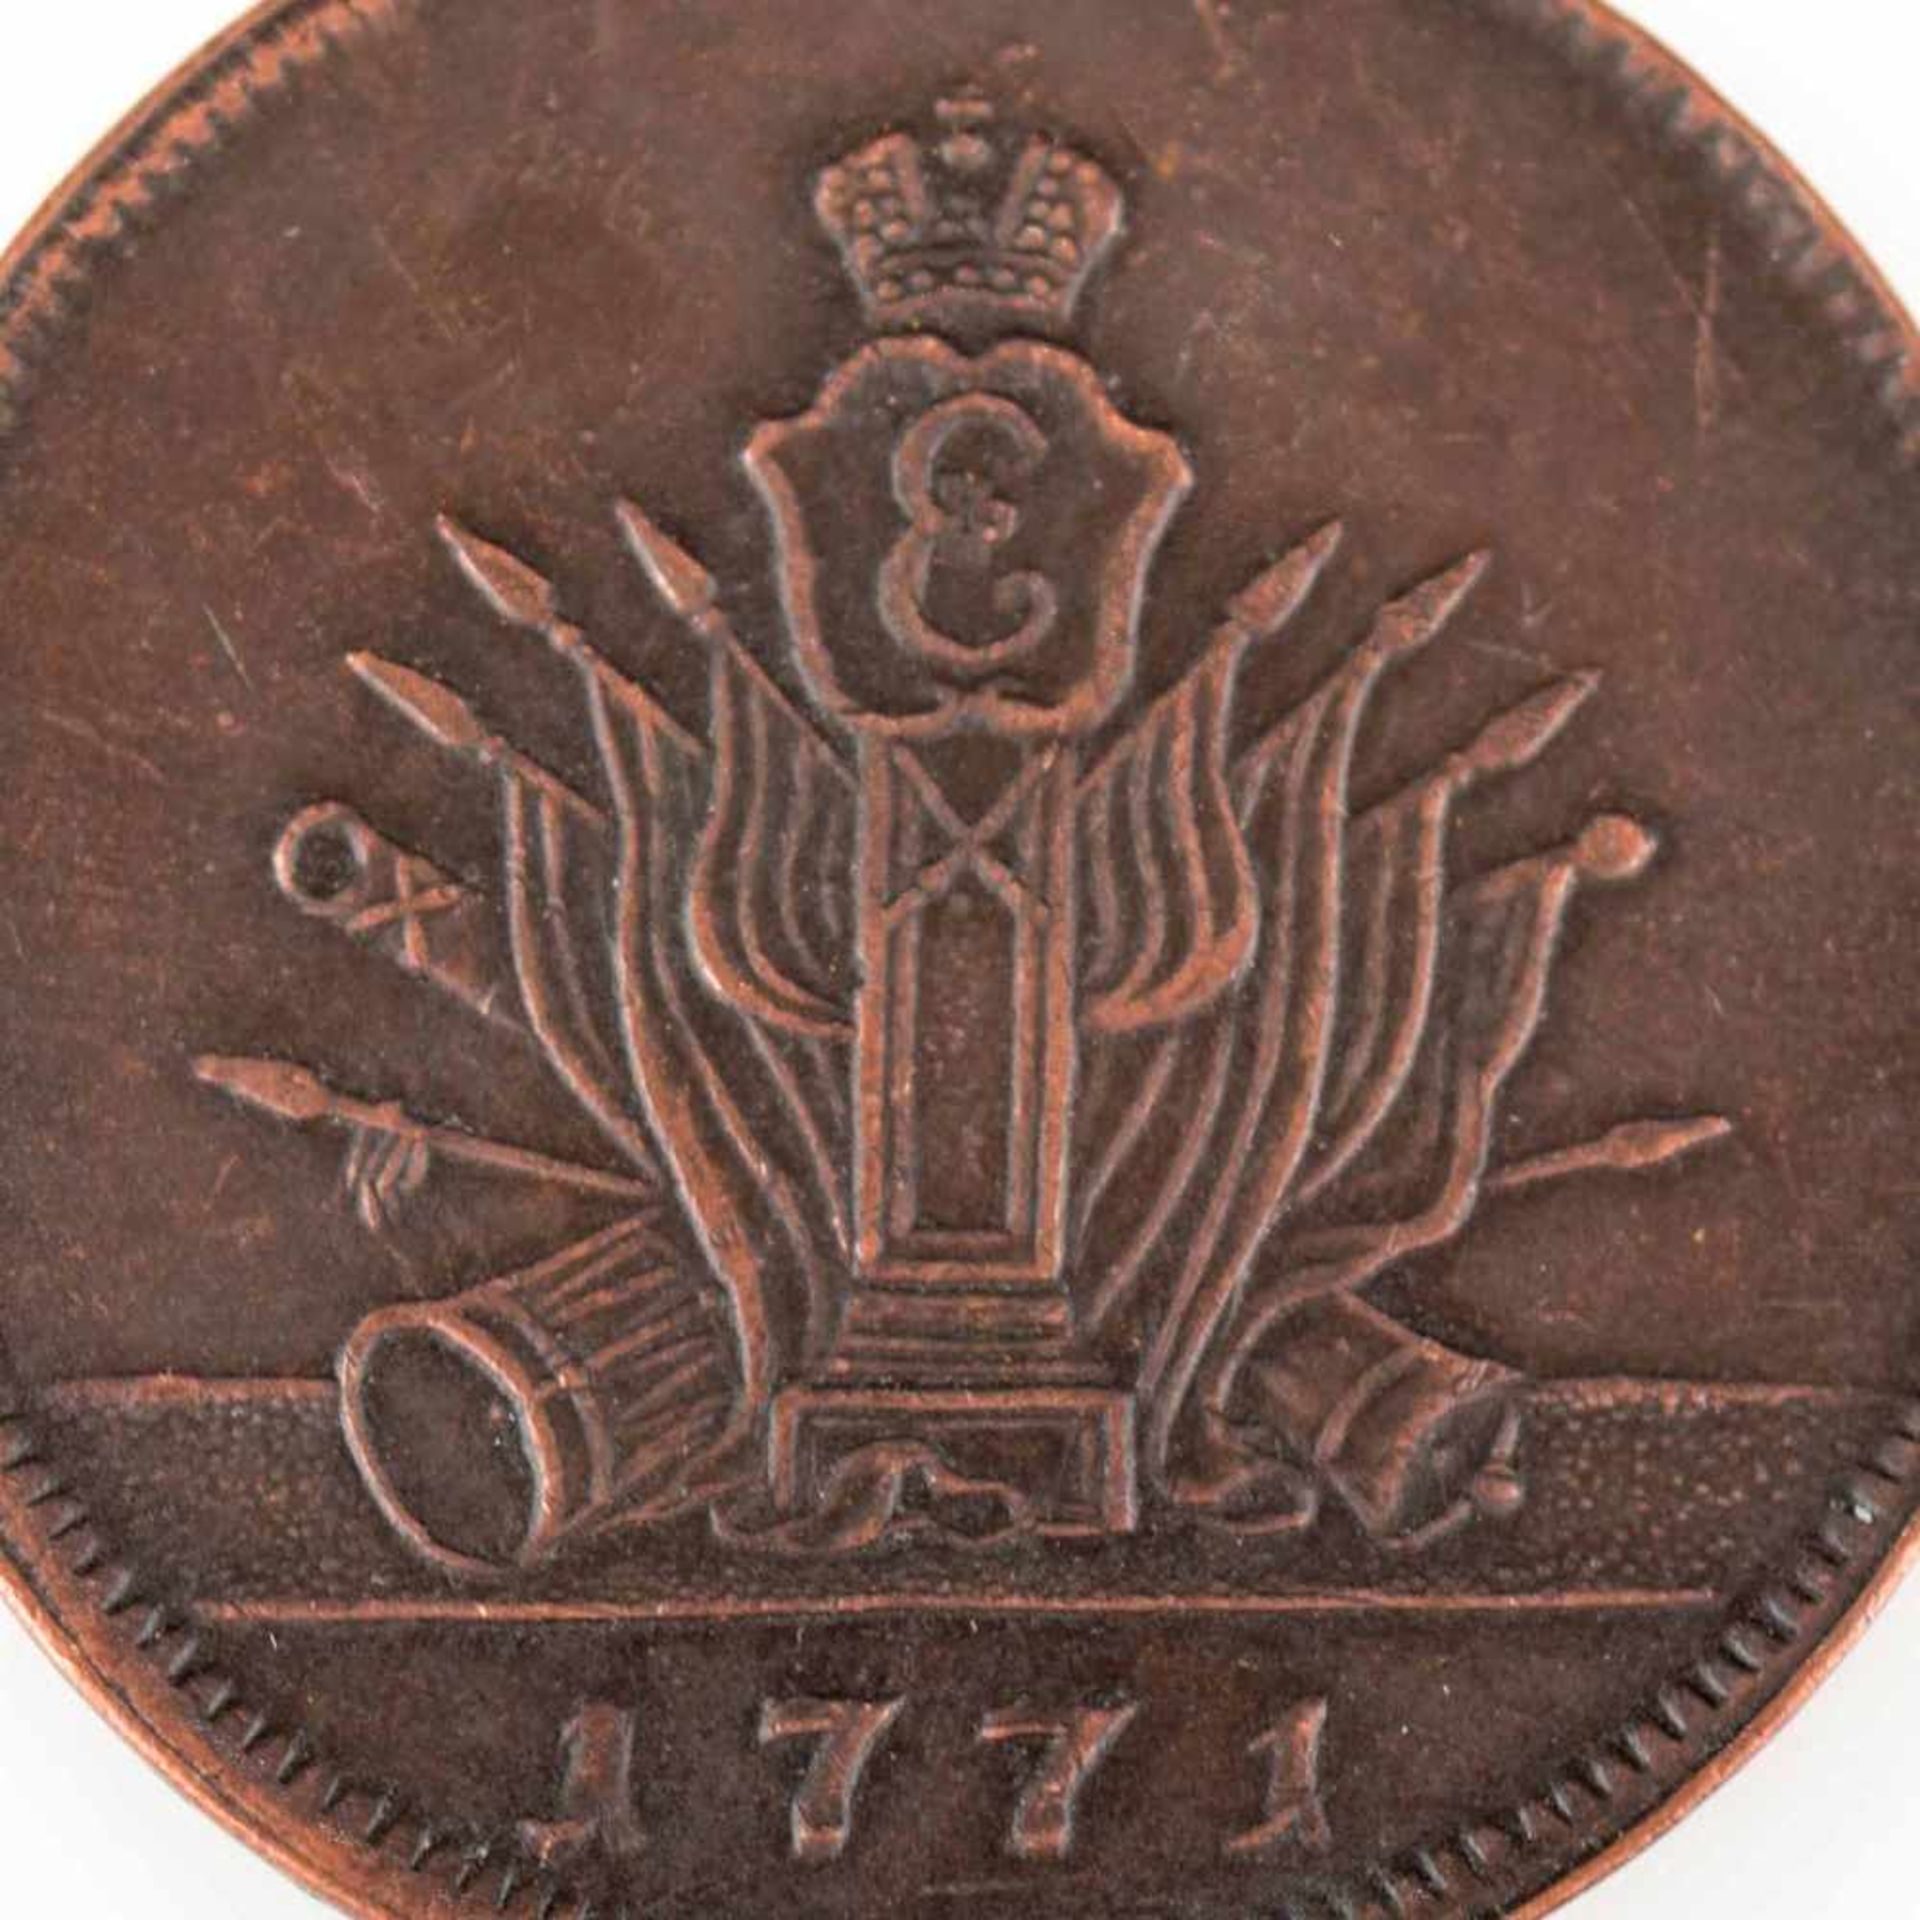 Münze Russland 1771 5 Kopeken, Kupfer, Regierungszeit Katharina II. (1762 - 1796), av.